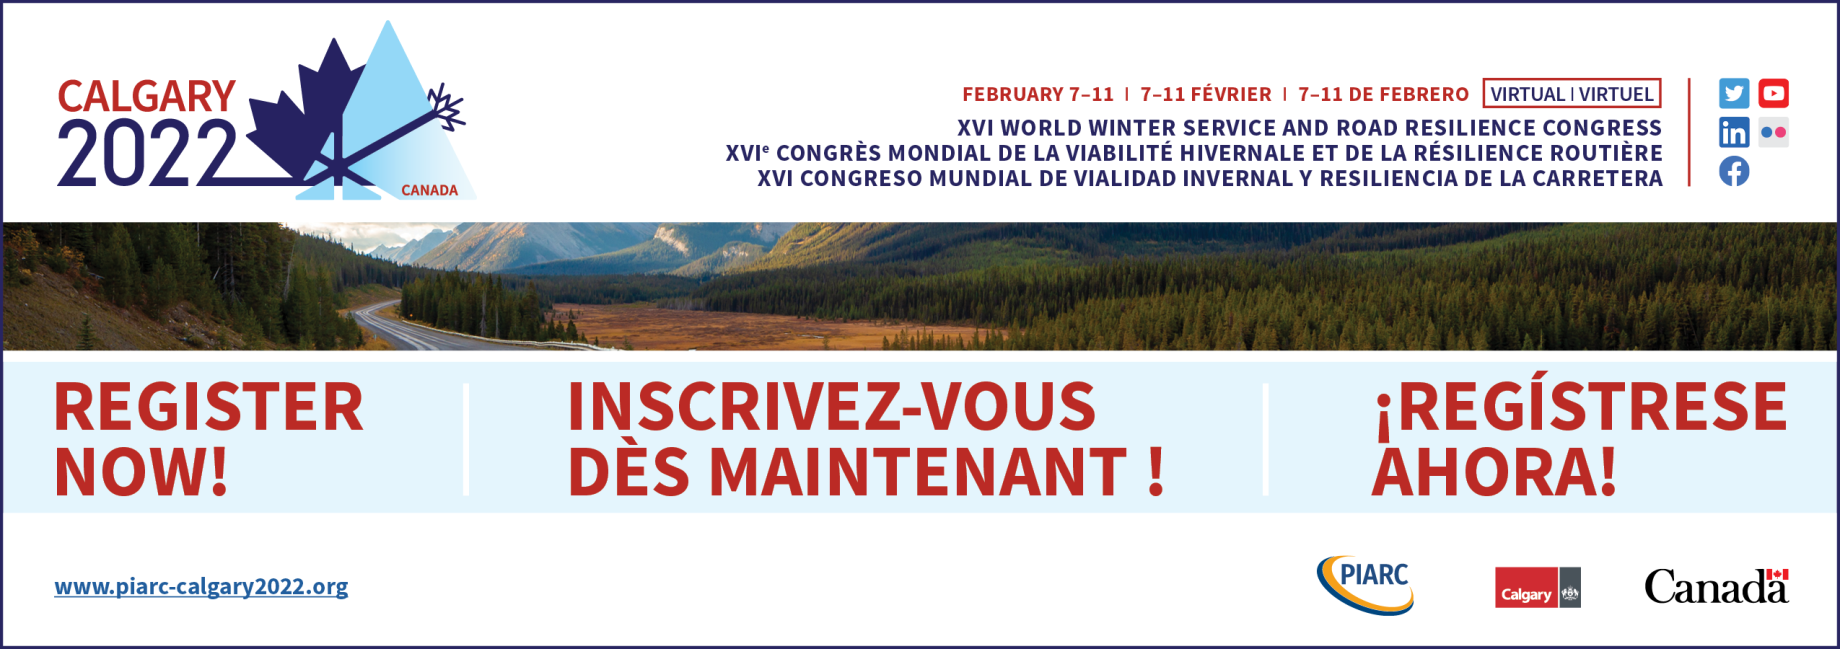 Les
inscriptions sont ouvertes ! Réservez dès
maintenant et participez virtuellement au XVIe Congrès mondial de la Viabilité
hivernale et de la Résilience routière